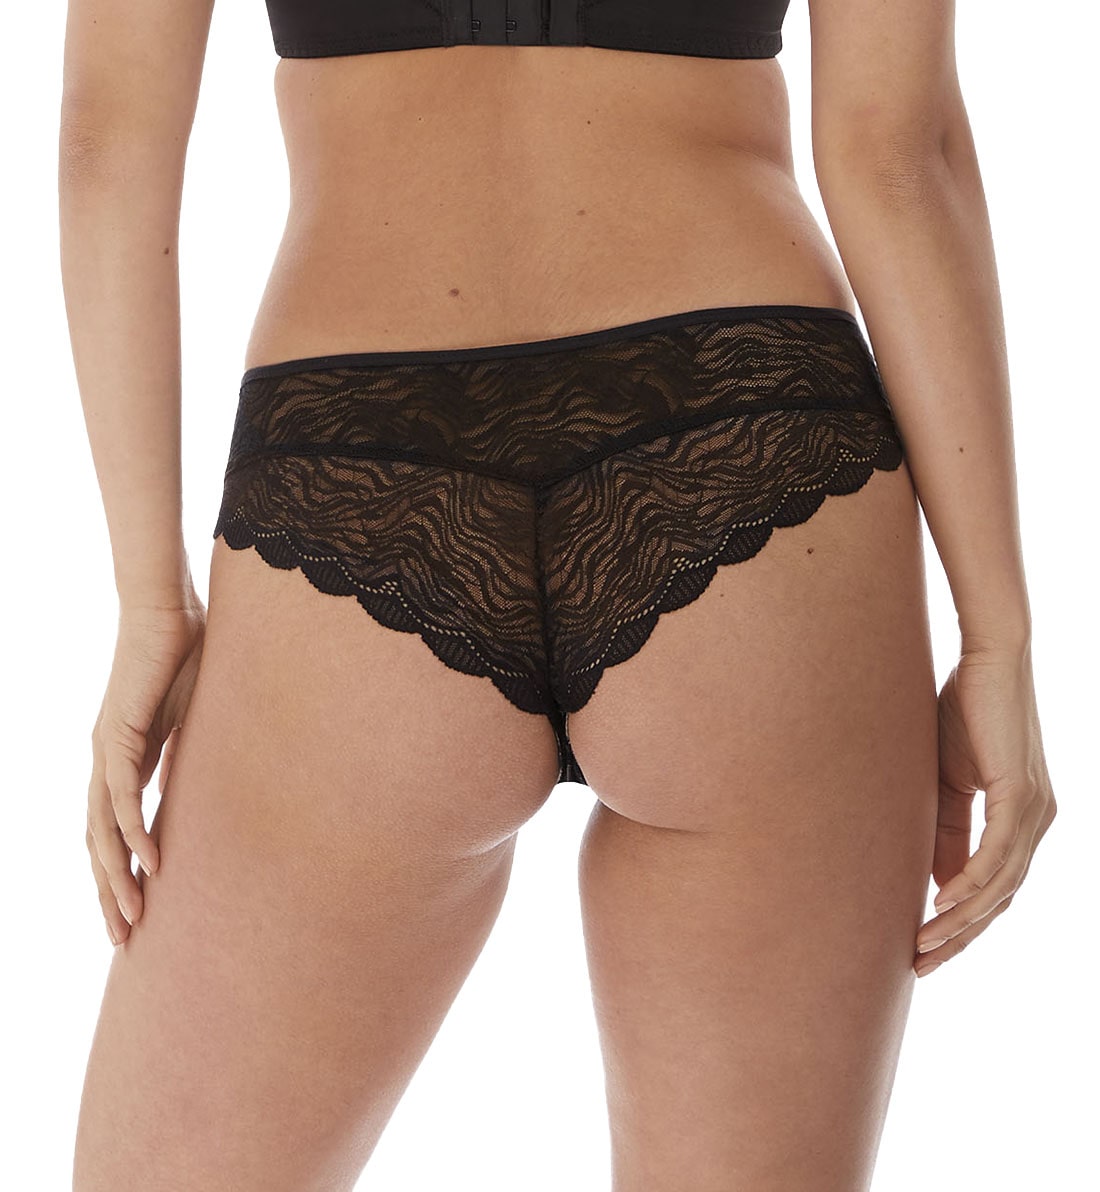 Fantasie Impression Brazilian Lace Panty (5857),XS,Black - Black,XS